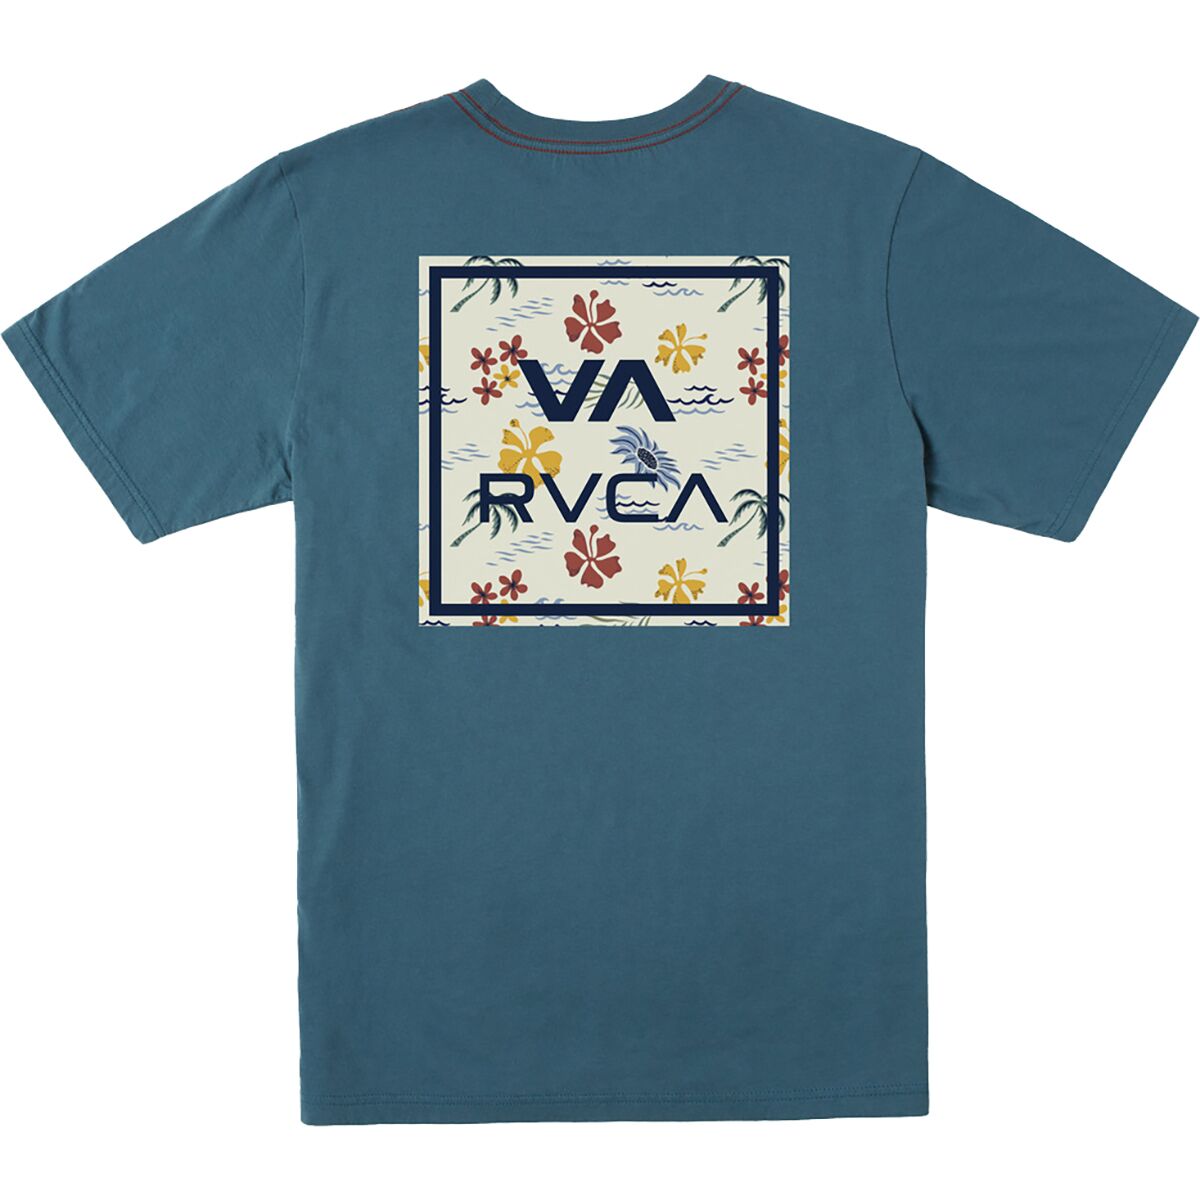 RVCA VA All The Way T-Shirt - Men's